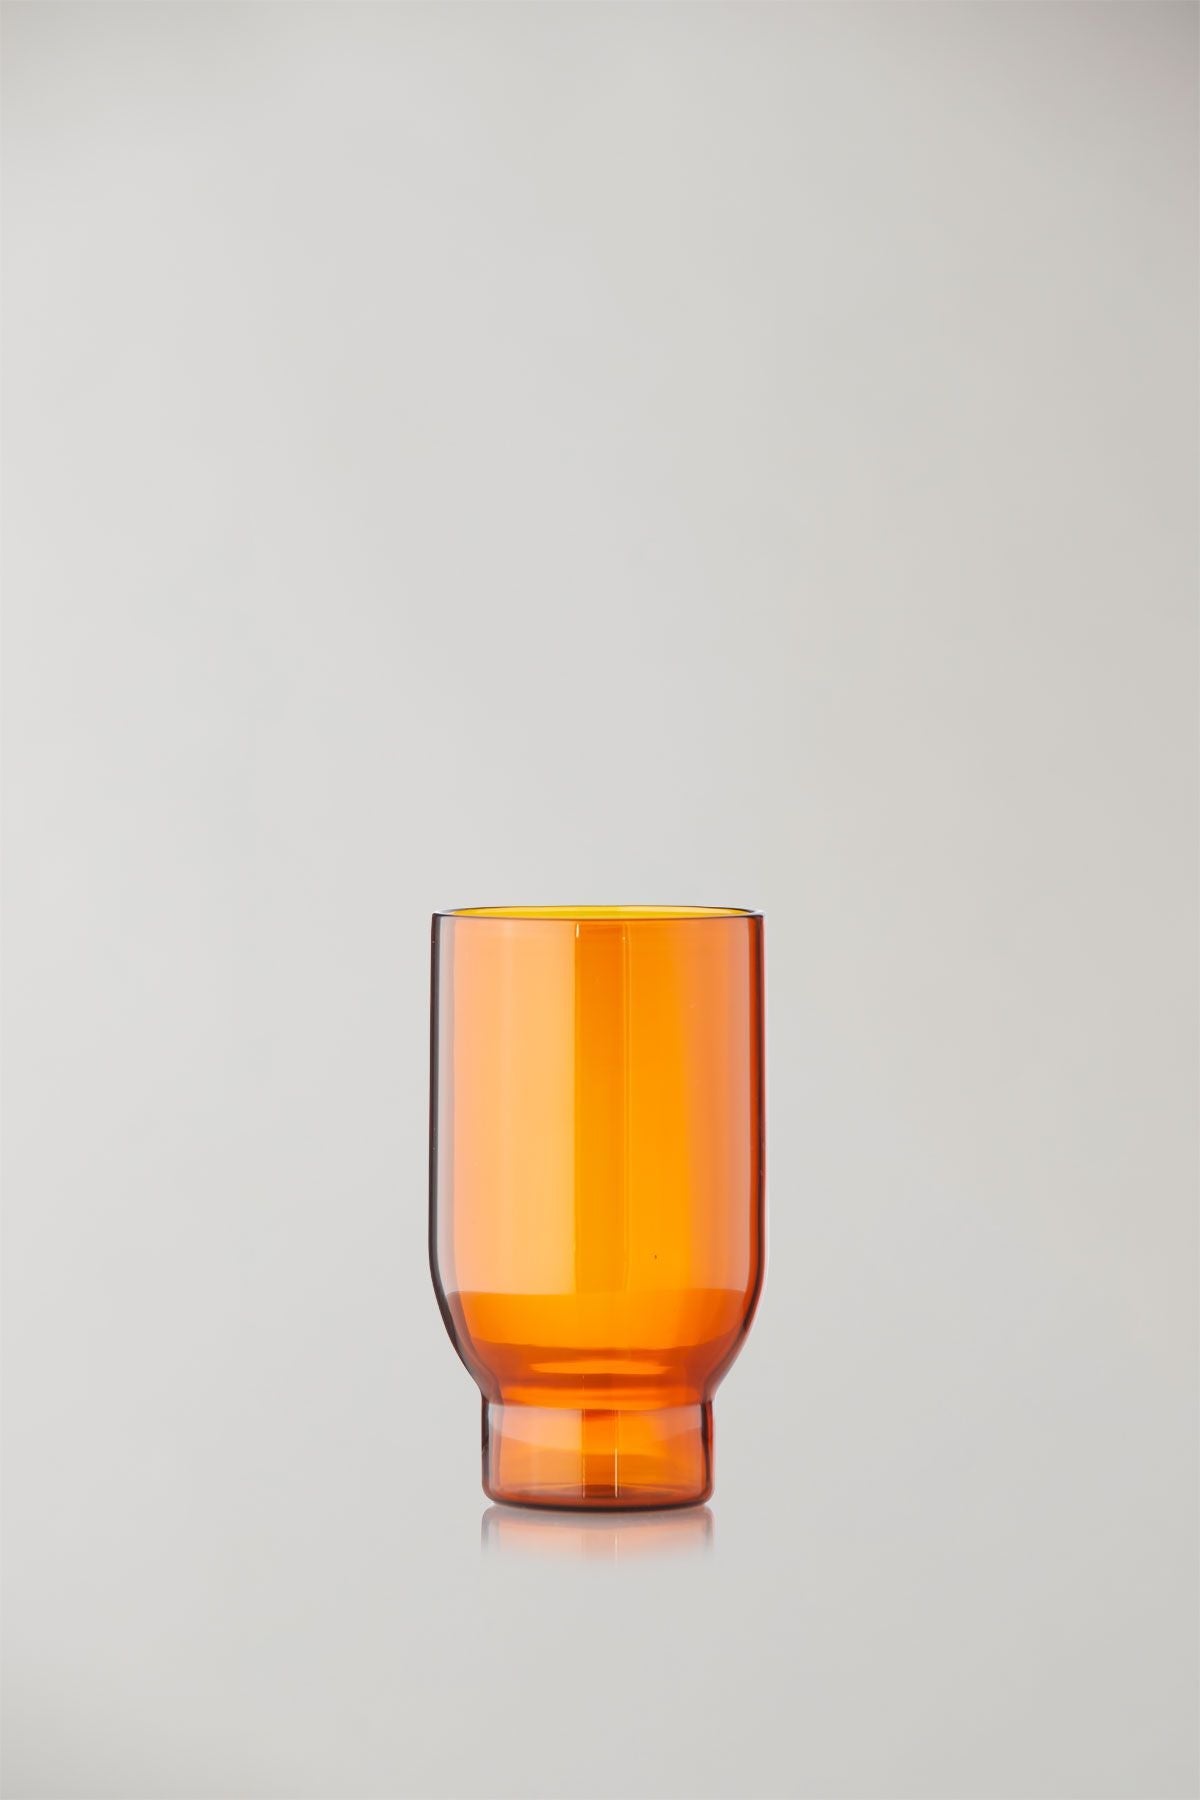 Studio sur l'ensemble de verre de verre de 2 verres à eau, ambre